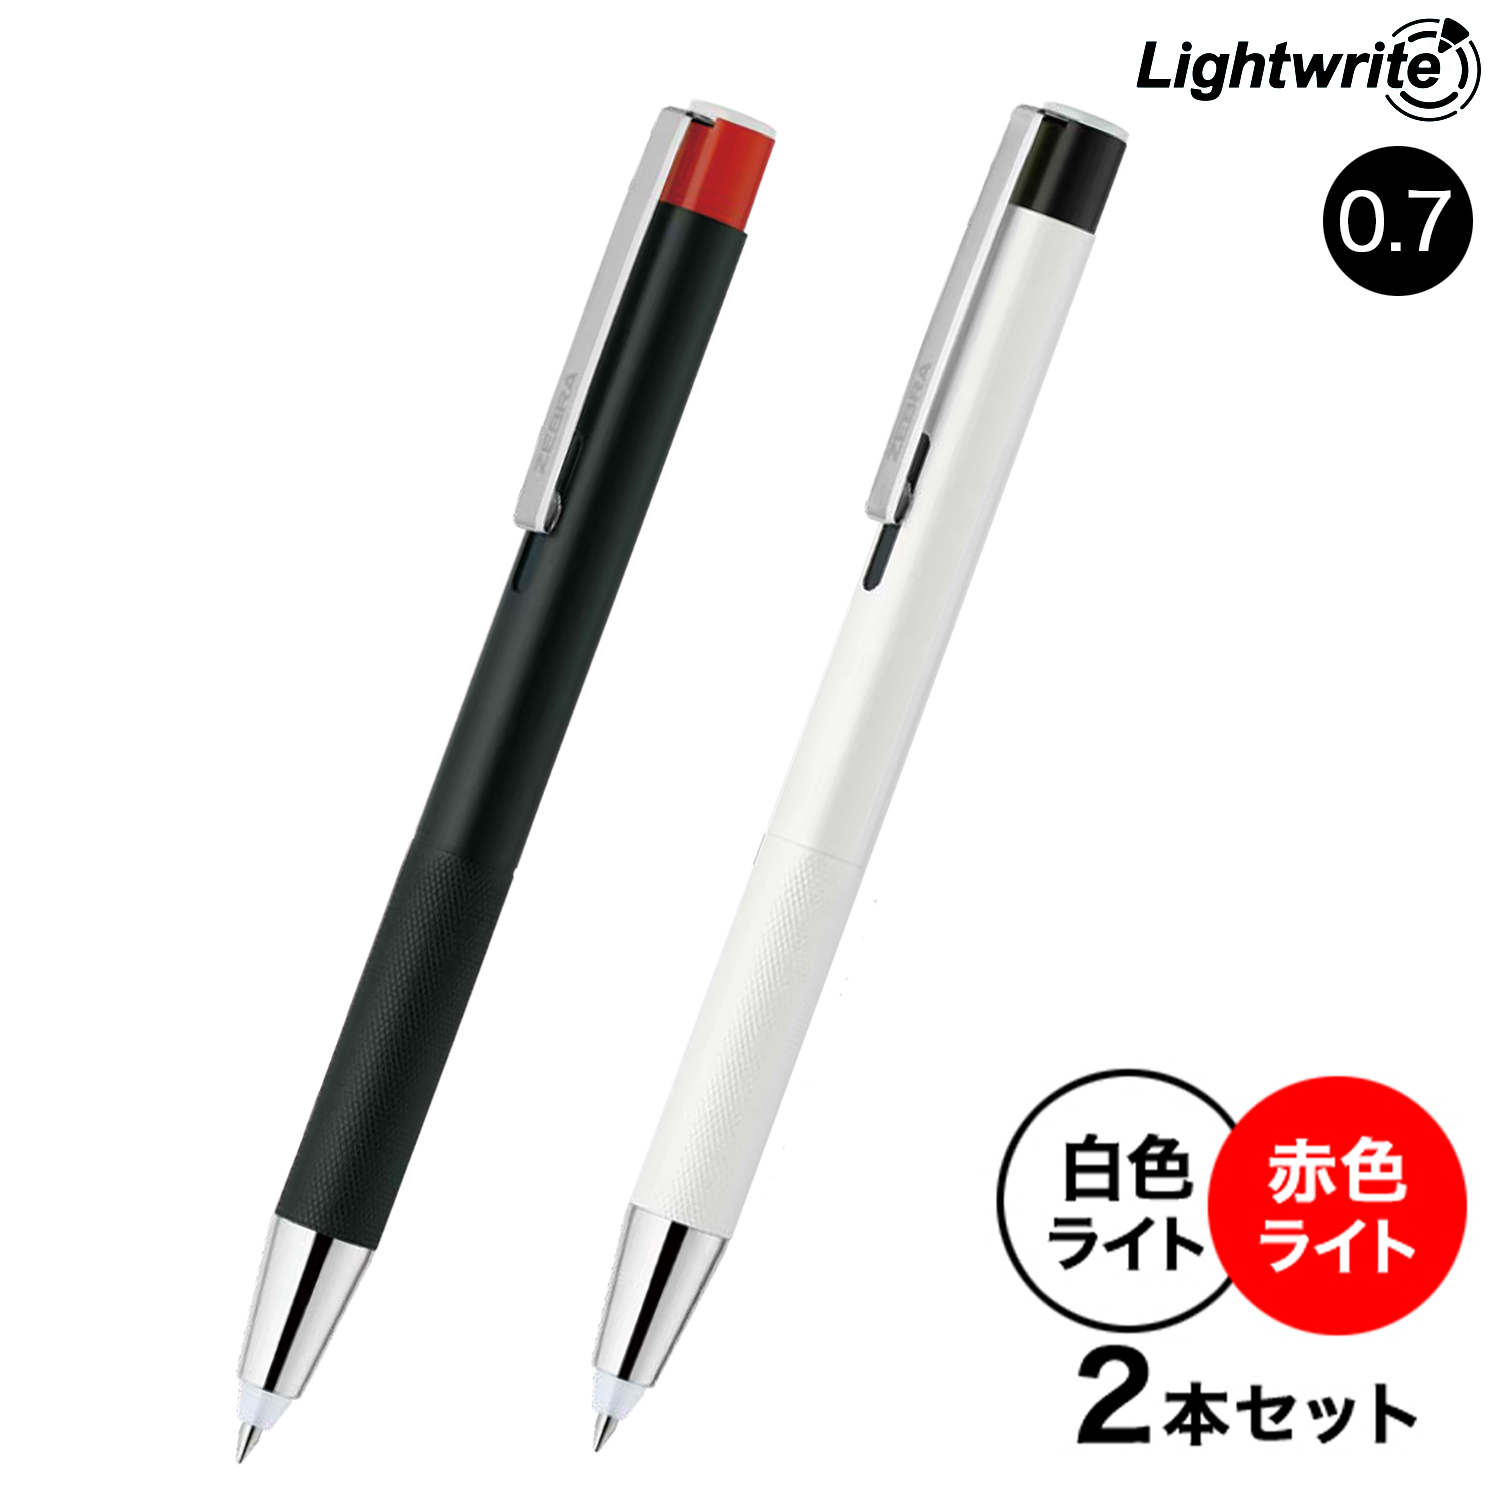 ゼブラ ZEBRA Light writeα ライトライトα 0.7 白色LED P-BA96-W 赤色